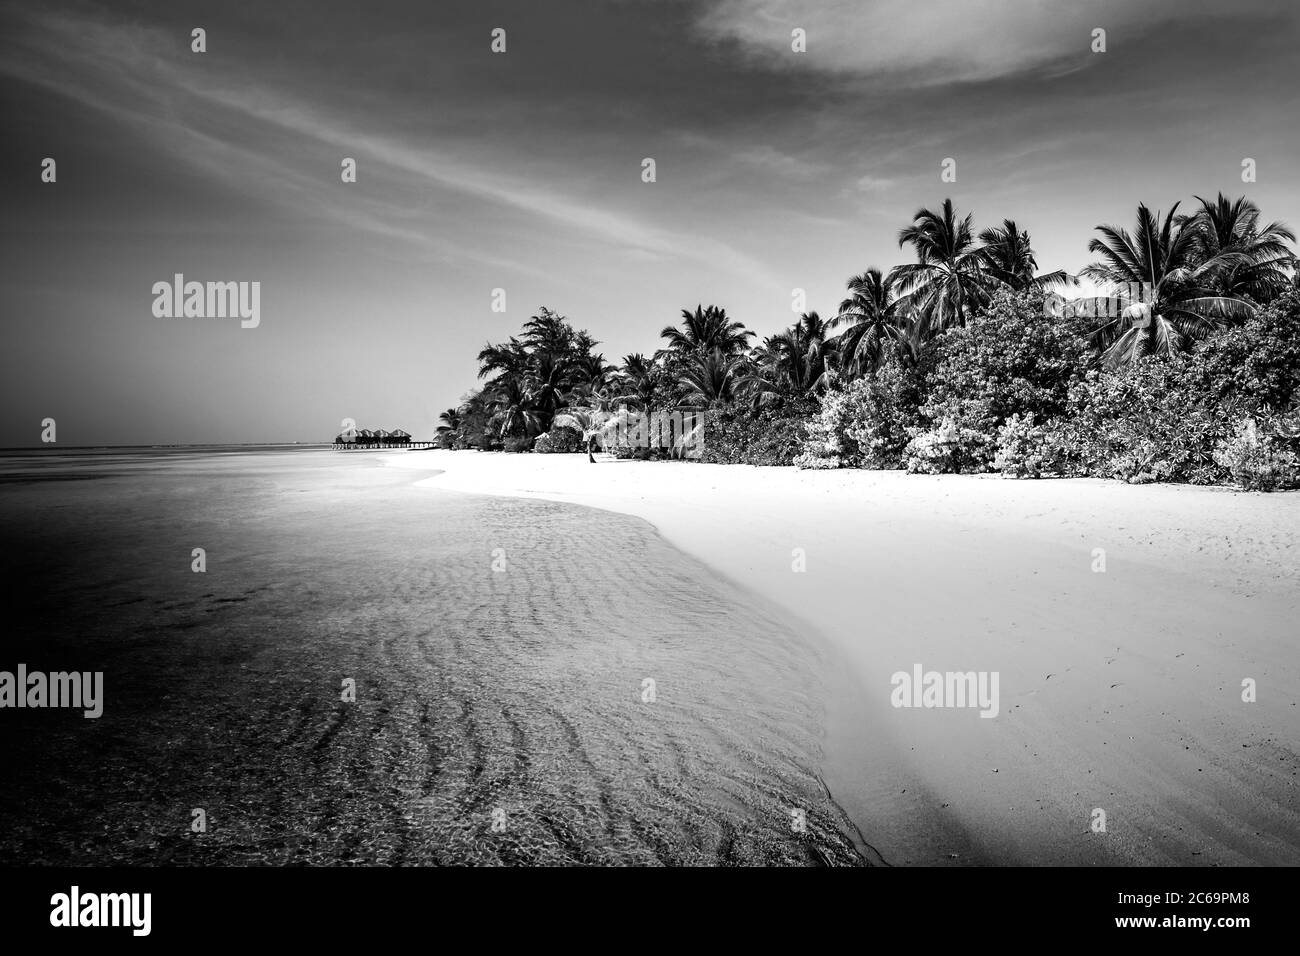 Paysage abstrait noir et blanc de plage tropicale. Paradise Island, avec sable de mer calme et palmiers, artistique spectaculaire noir et blanc monochrome Banque D'Images